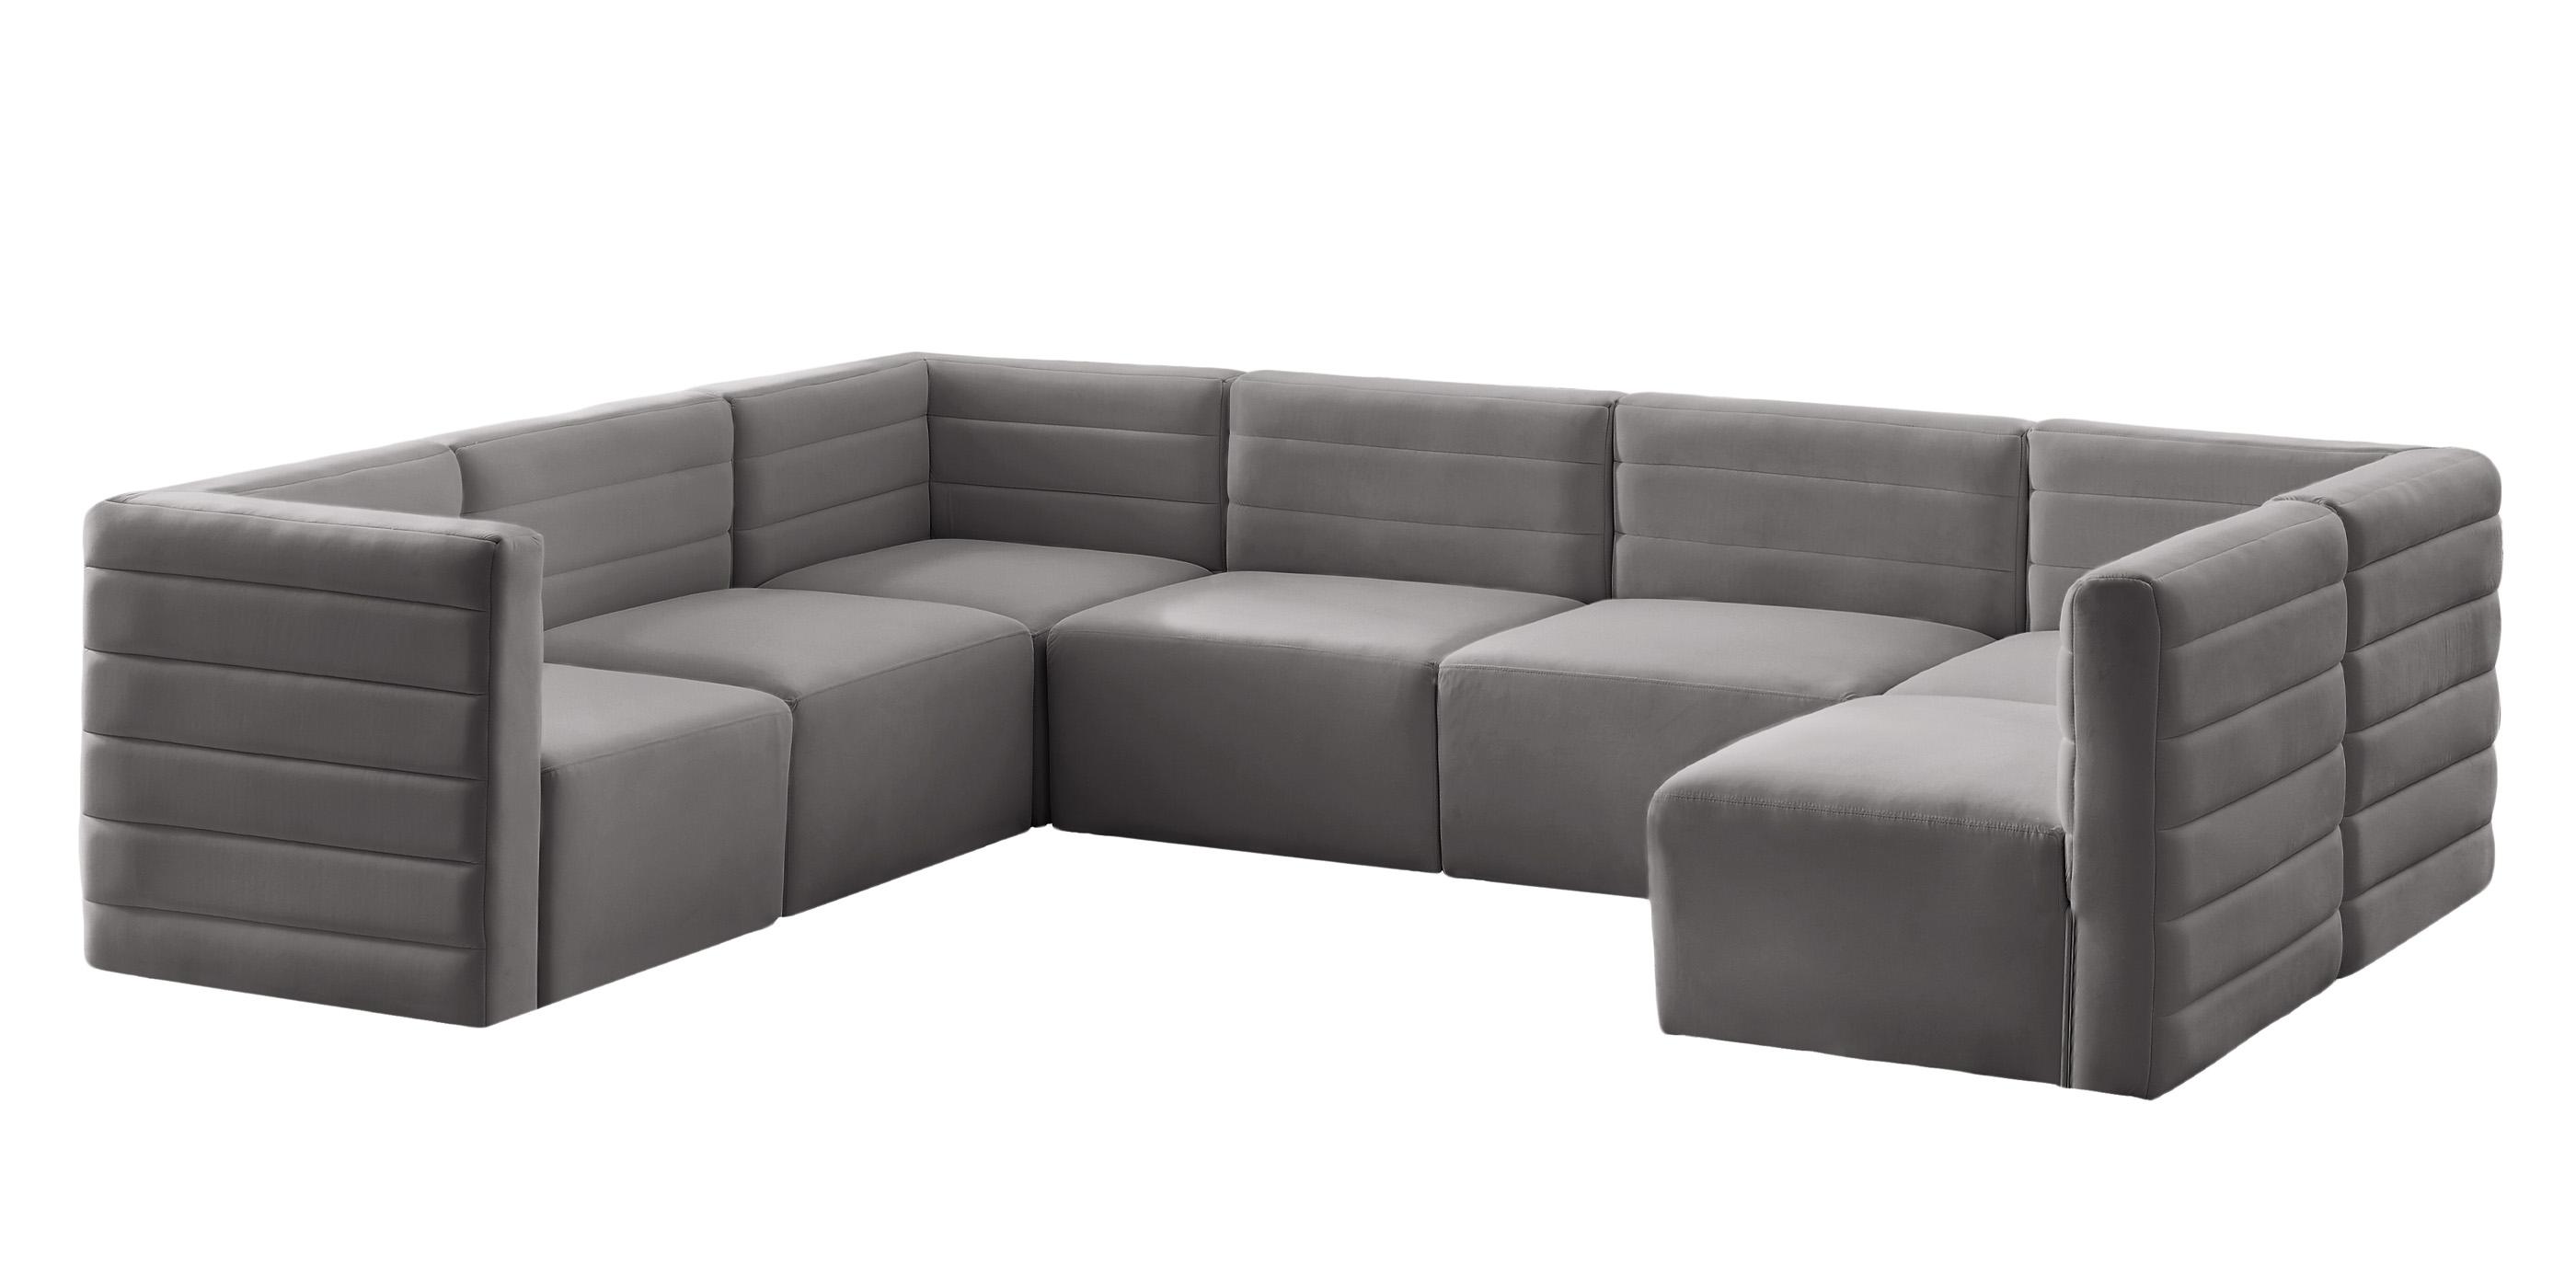 

    
677Grey-Sec7A Meridian Furniture Modular Sectional Sofa
